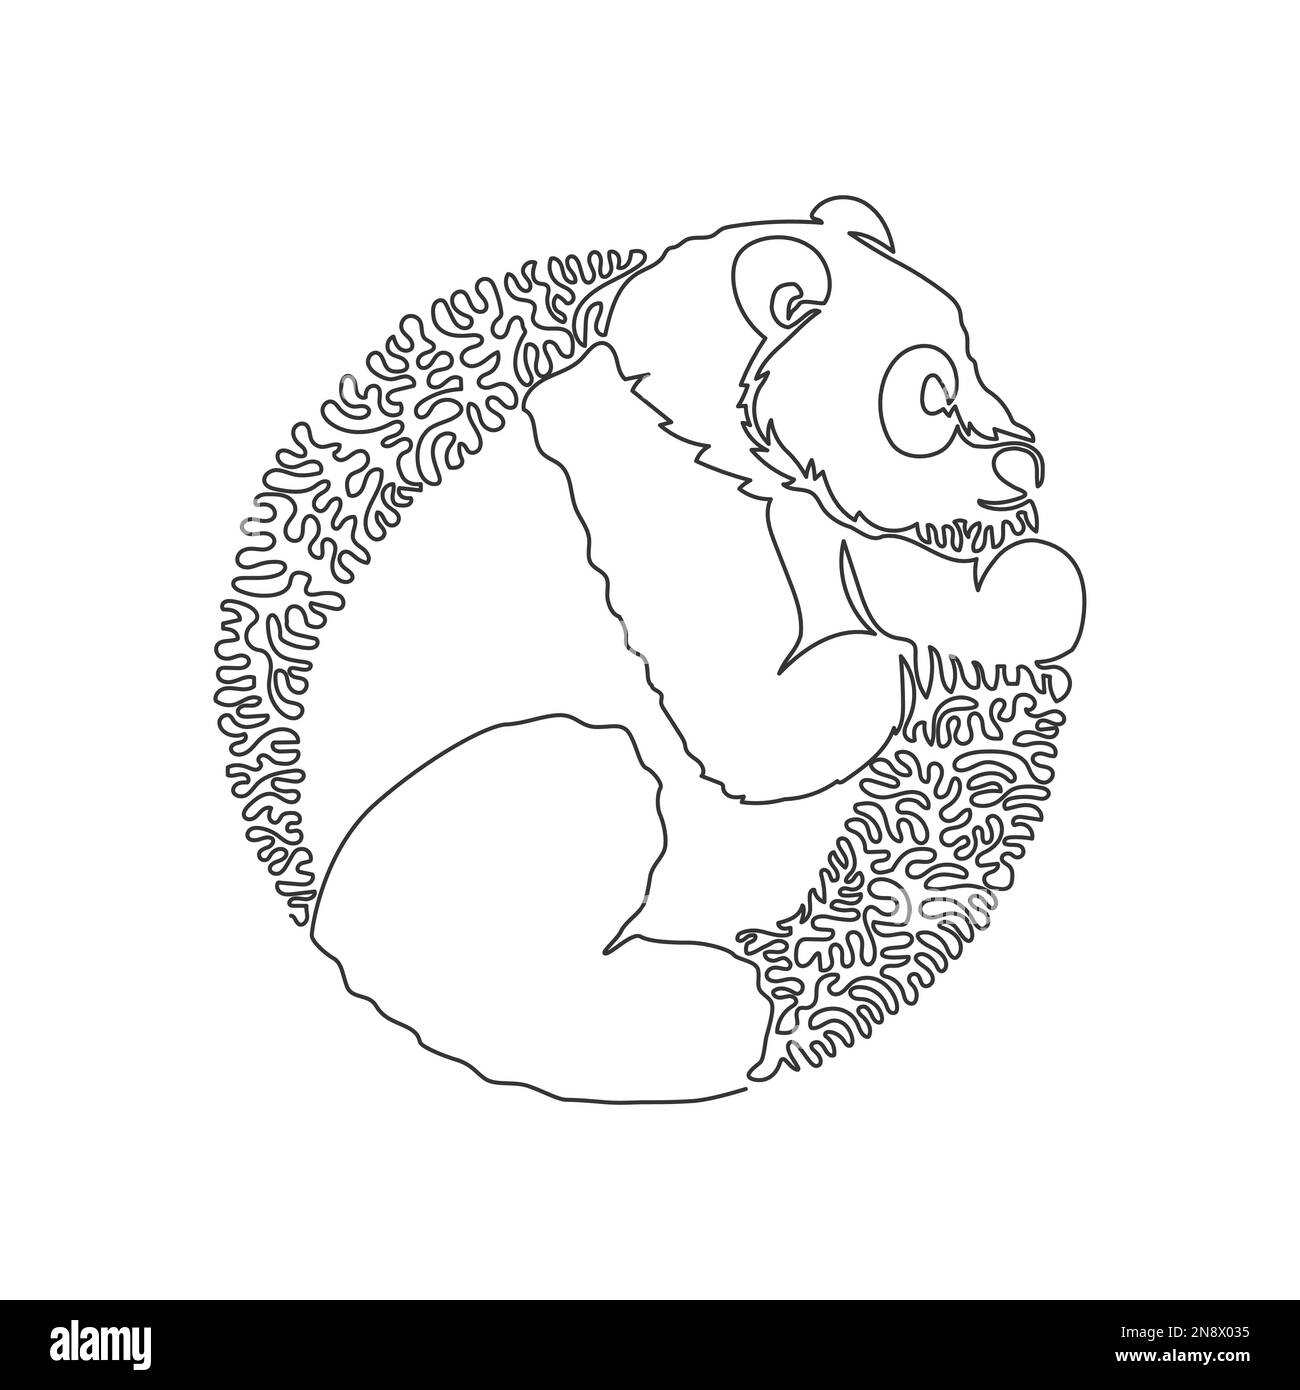 Dessin continu d'une ligne de courbe de panda géant drôle art abstrait en cercle. Illustration d'un vecteur de contour modifiable à une seule ligne de panda de corps volumineux Illustration de Vecteur